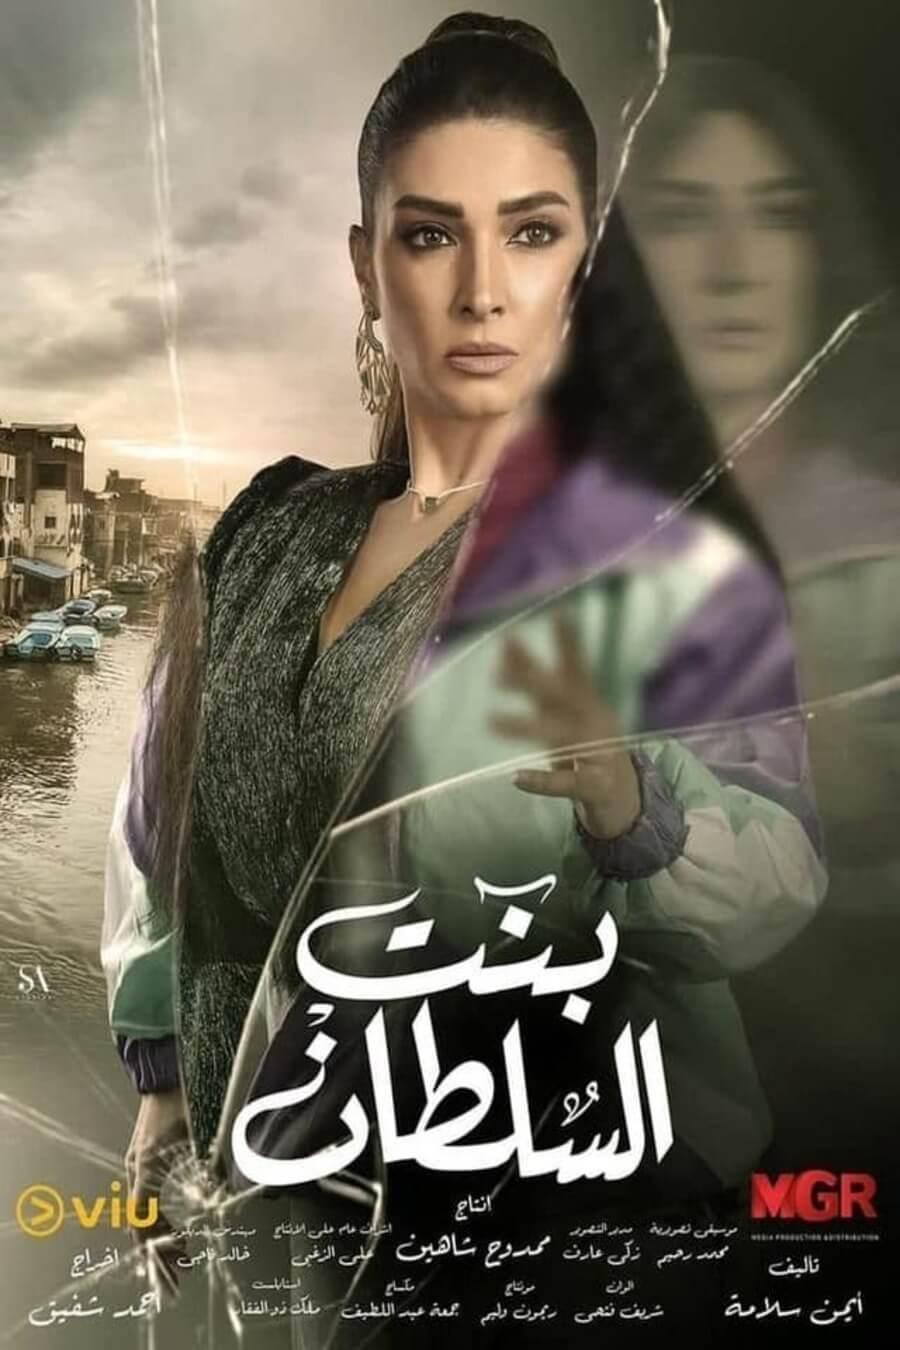 TV ratings for Bint El Sultan (بنت السلطان) in los Estados Unidos. viu TV series